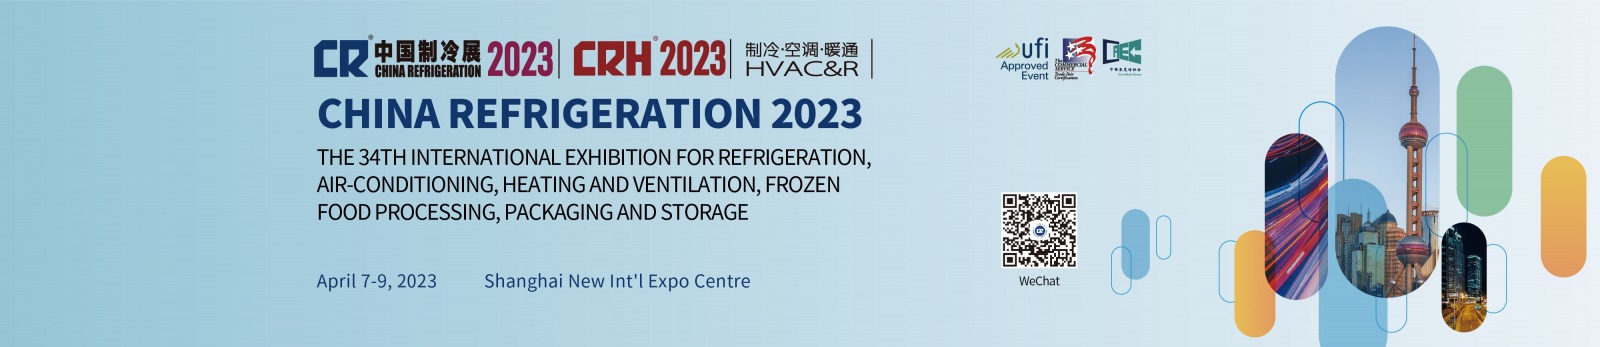 China Refrigeration Expo, CHINA REFRIGERATION EXPO